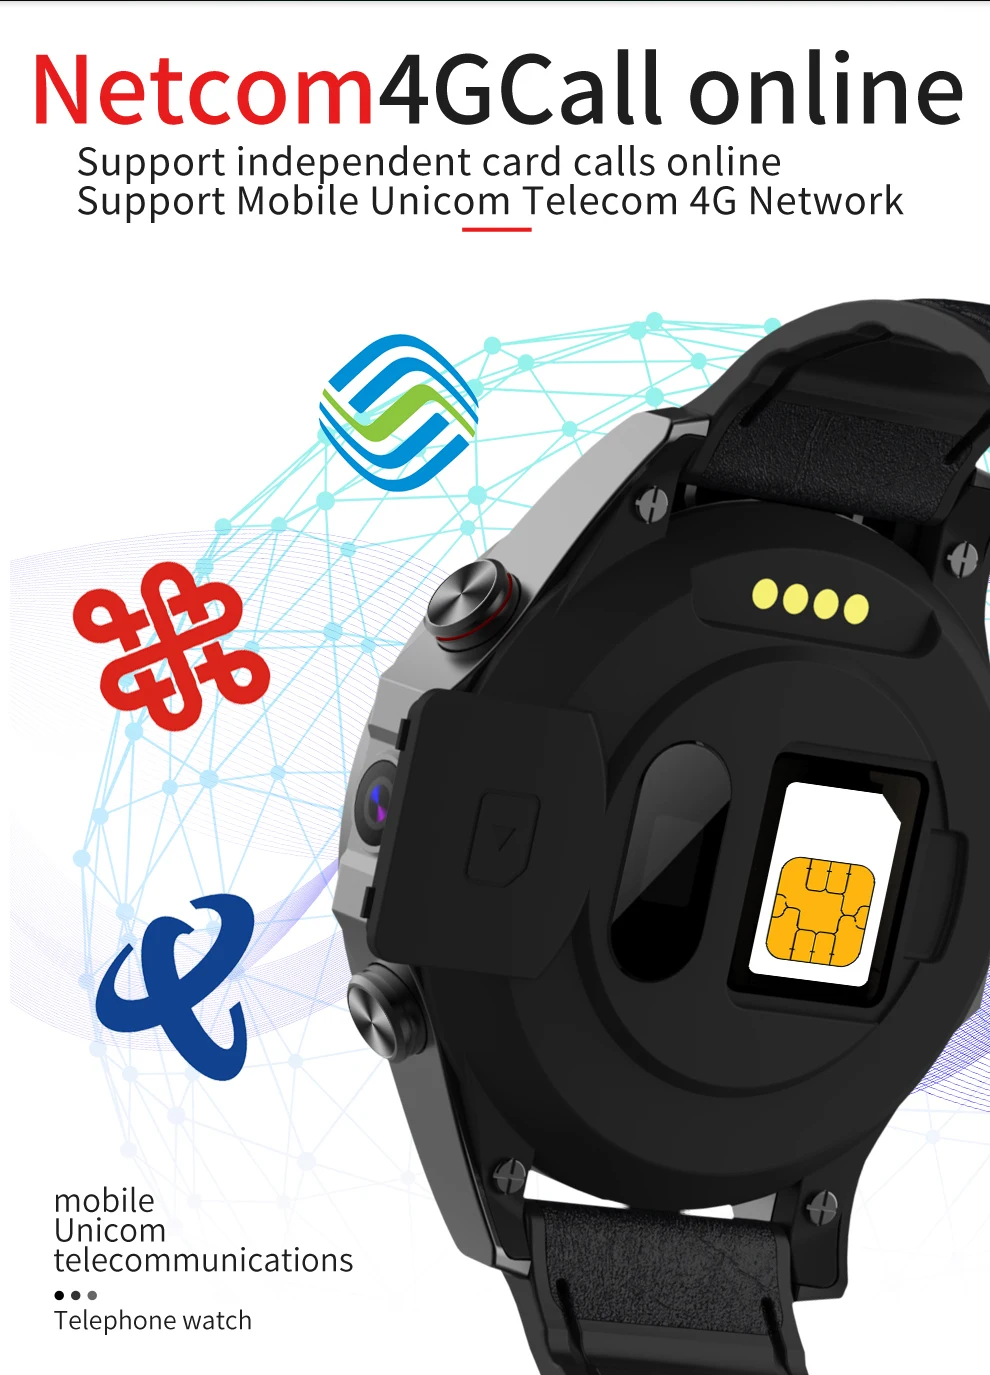 Точная навигационная карта Bluetooth Смарт часы монитор сердечного ритма Смарт часы погода Спорт на открытом воздухе наручные часы Смарт-часы 4G, пульсометр, камера МП, видео звонок, умные часы, телефон, часы для ios